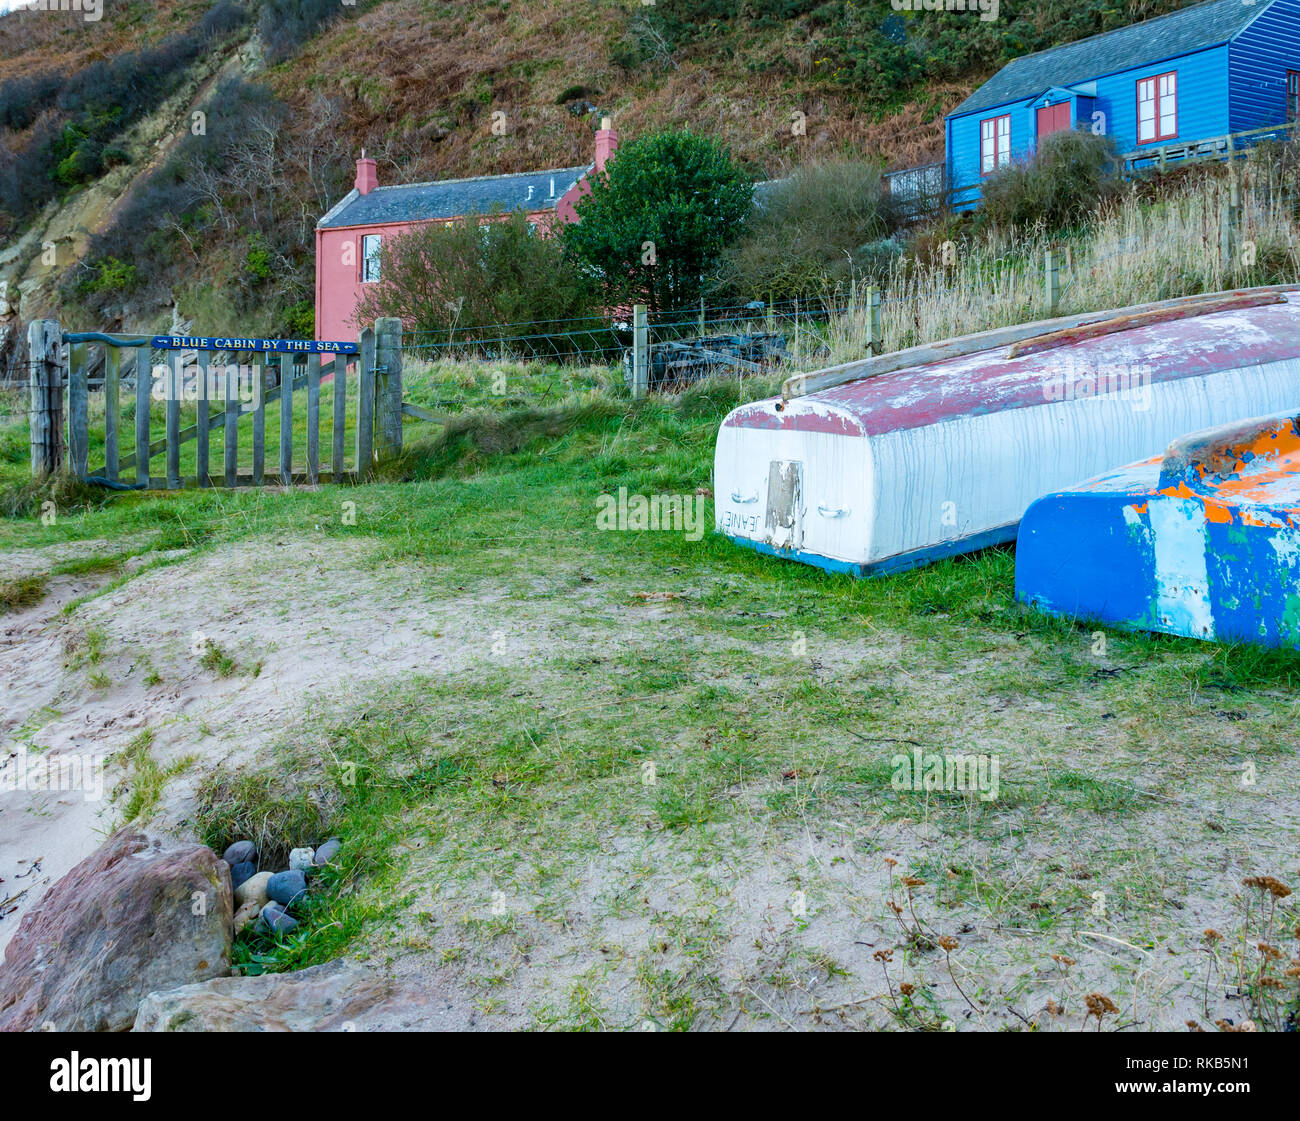 Cabine bleu par la mer cottages, Cove Harbour, Berwickshire, Scottish Borders, Scotland, UK Banque D'Images